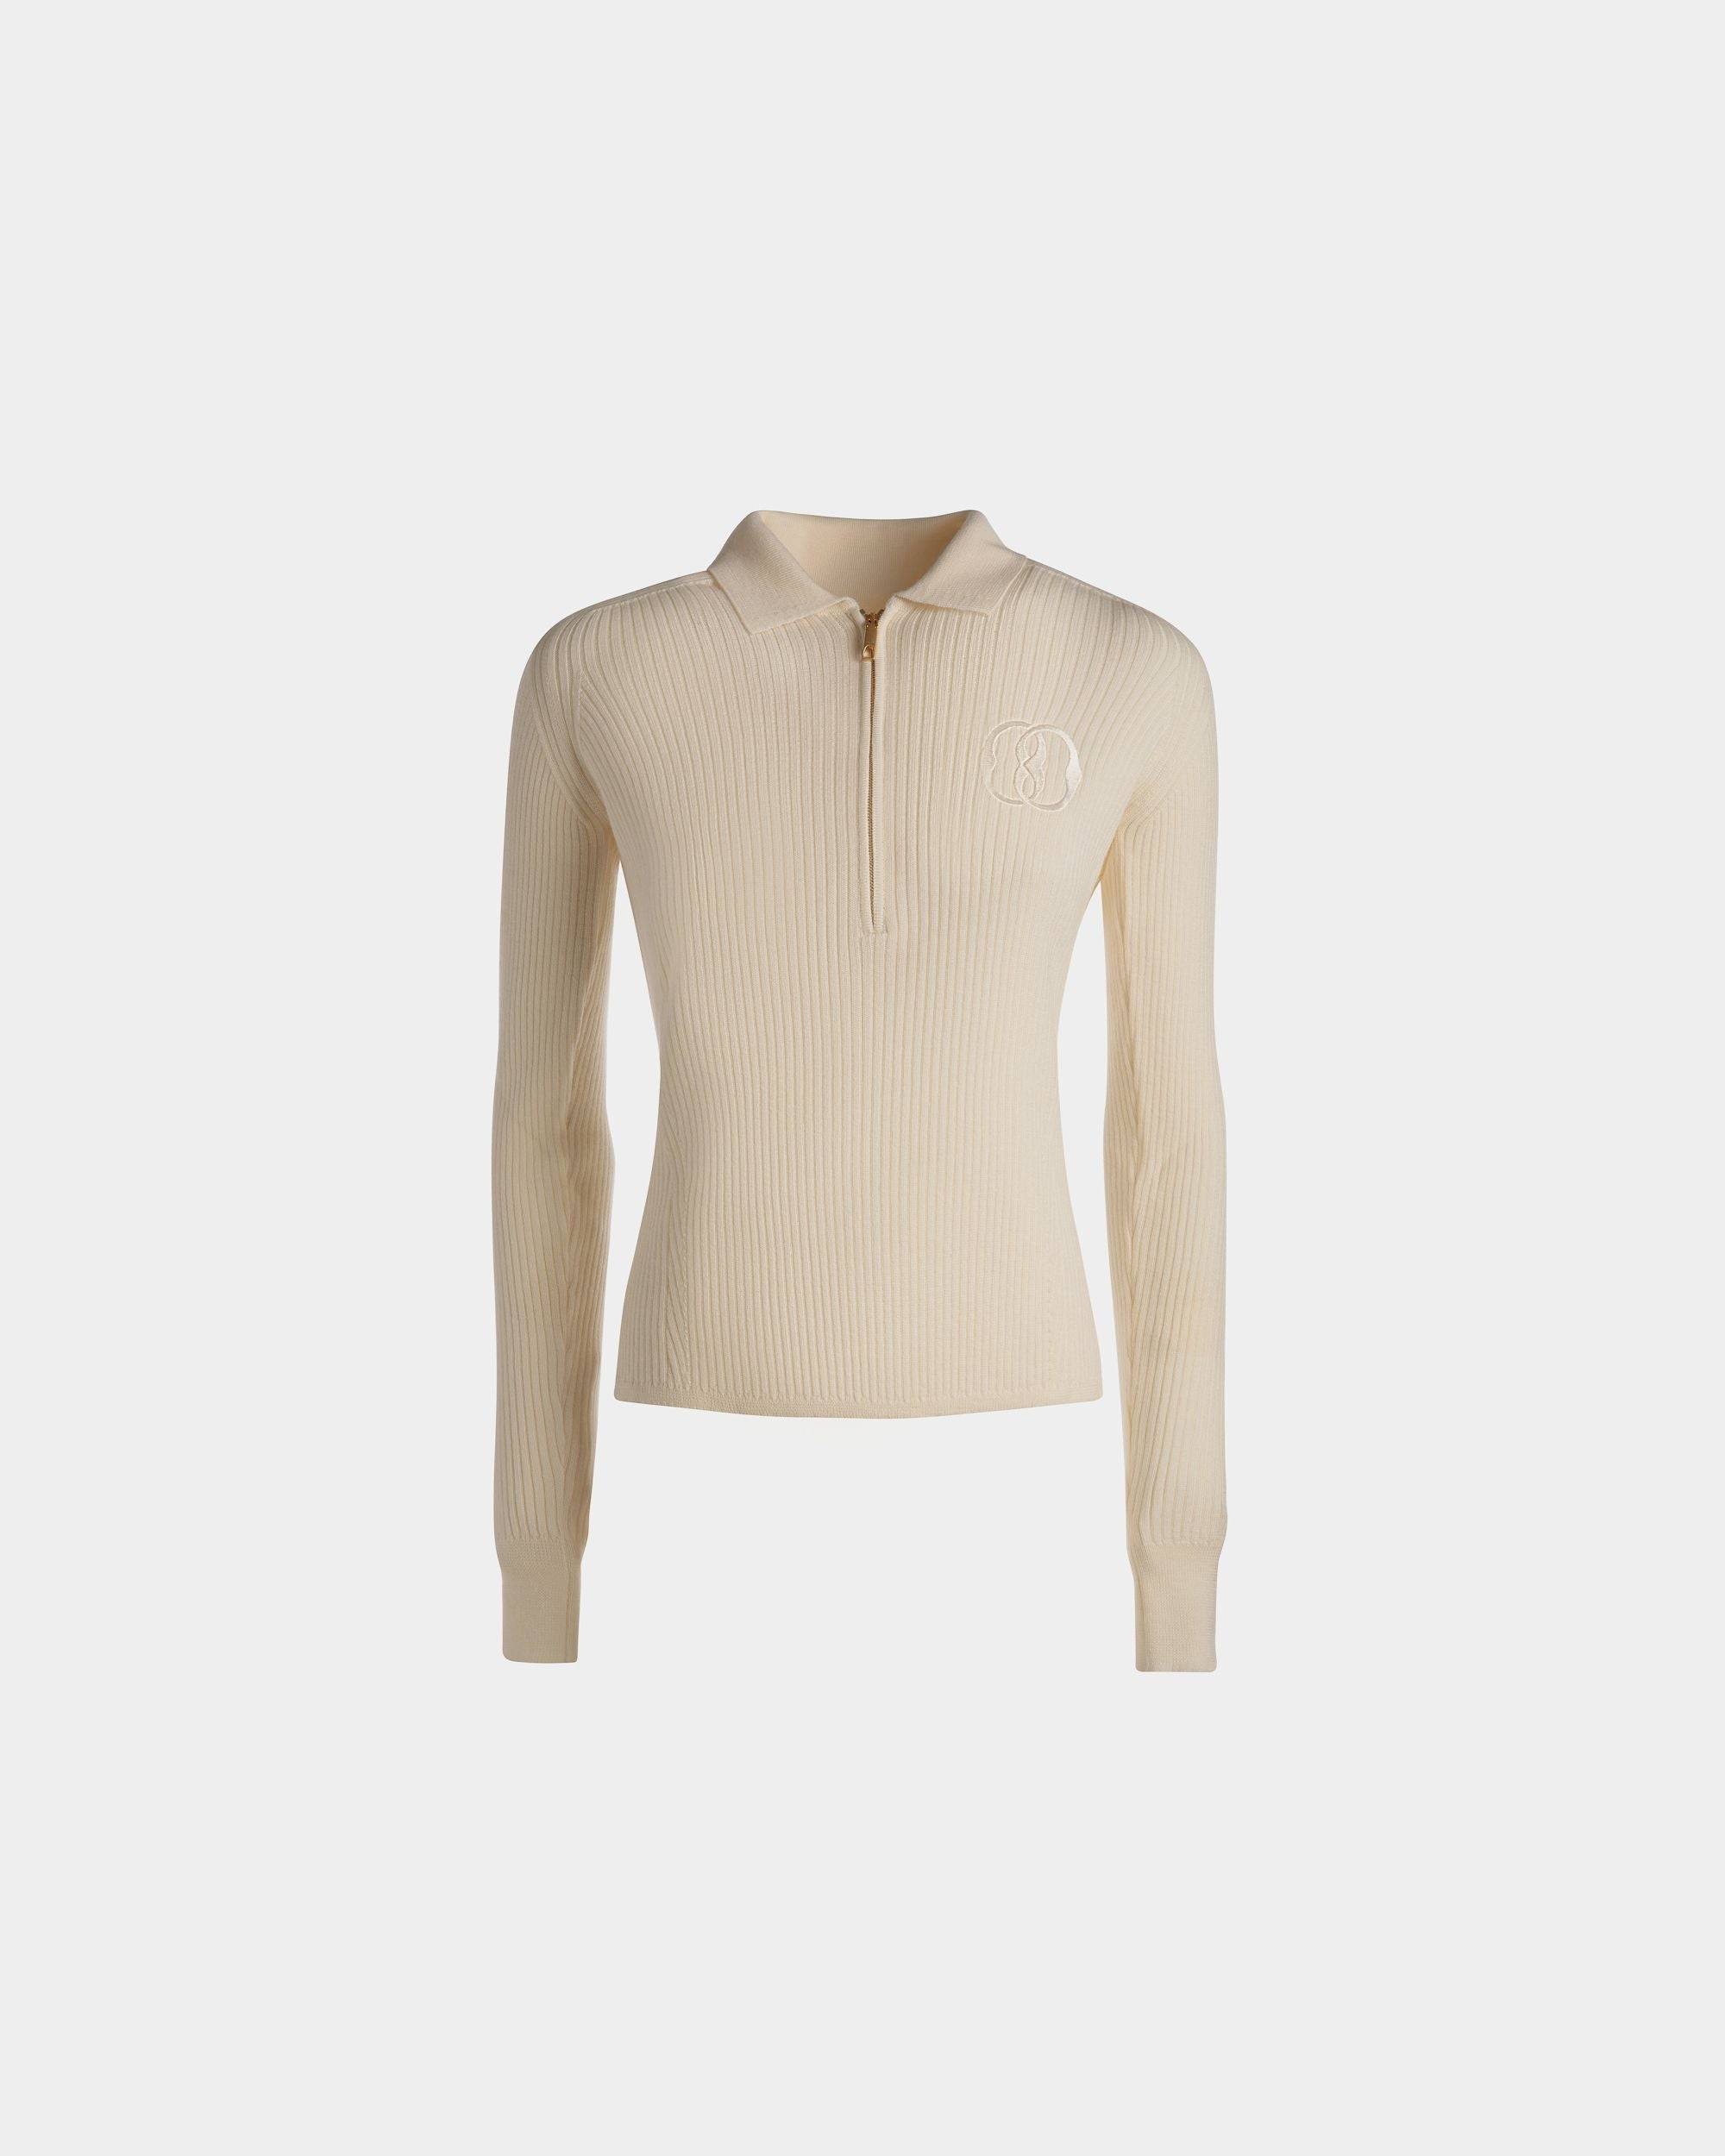 Langarm-Poloshirt | Poloshirt für Damen | Wolle in Elfenbein | Bally | Still Life Vorderseite